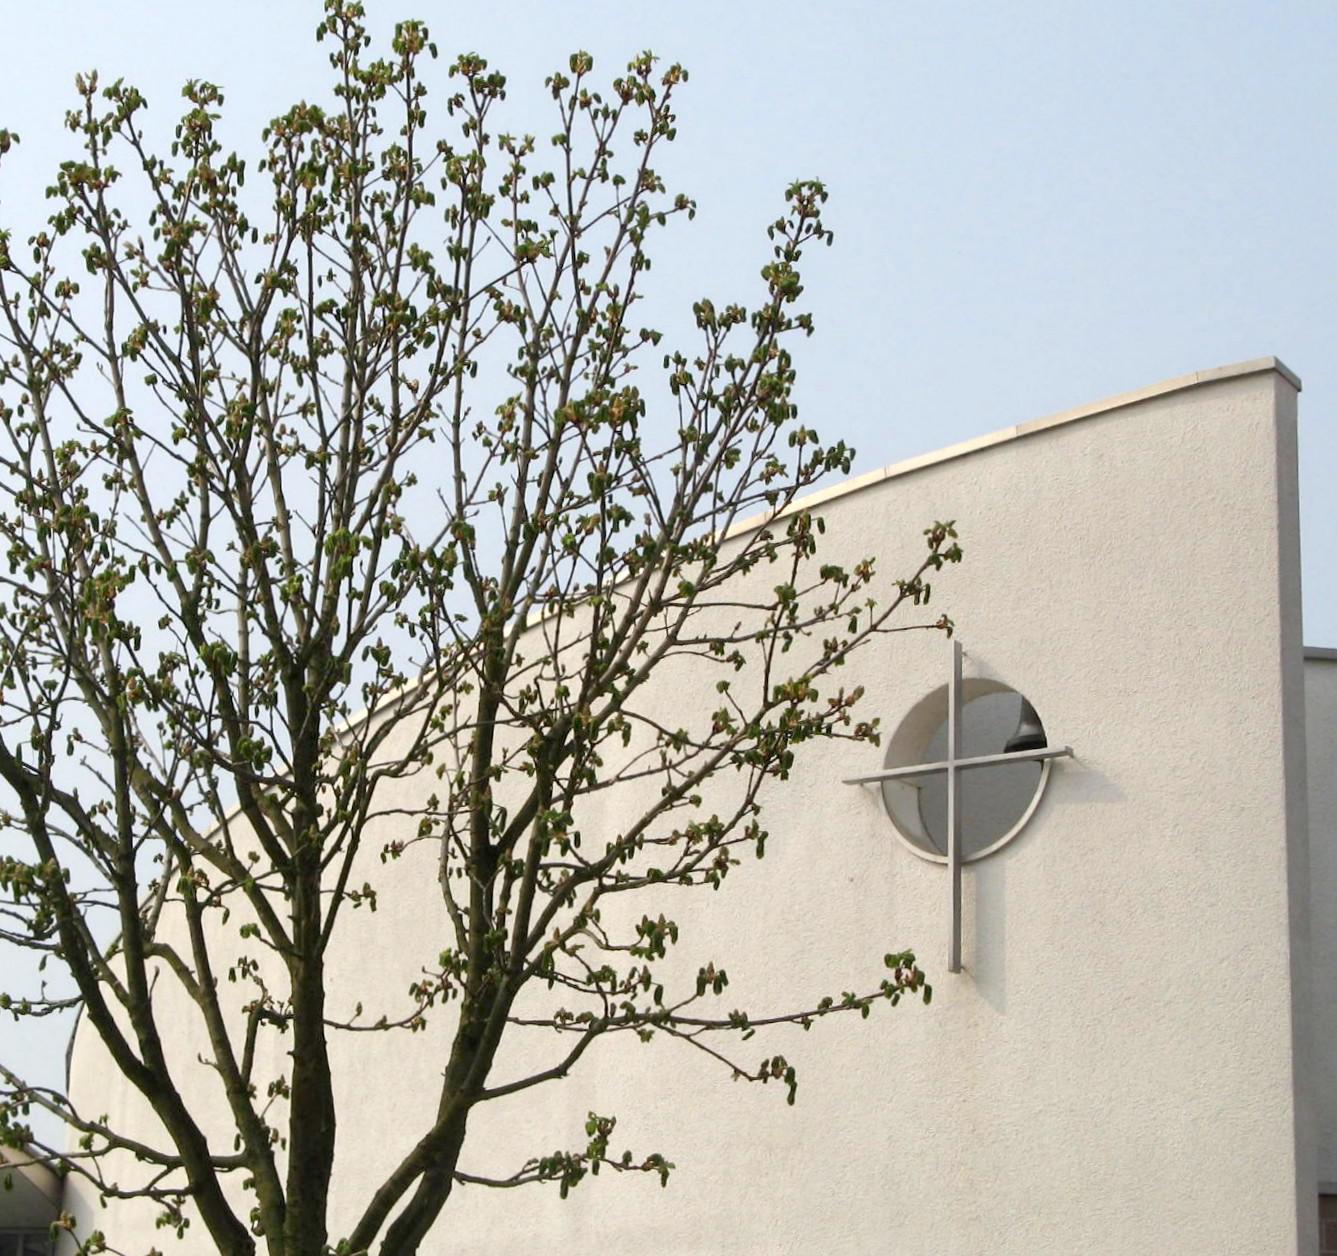 Bild 1 Erlöserkirche Wiesbaden Sauerland - Evangelische  Erlösergemeinde Wiesbaden-Sauerland in Wiesbaden